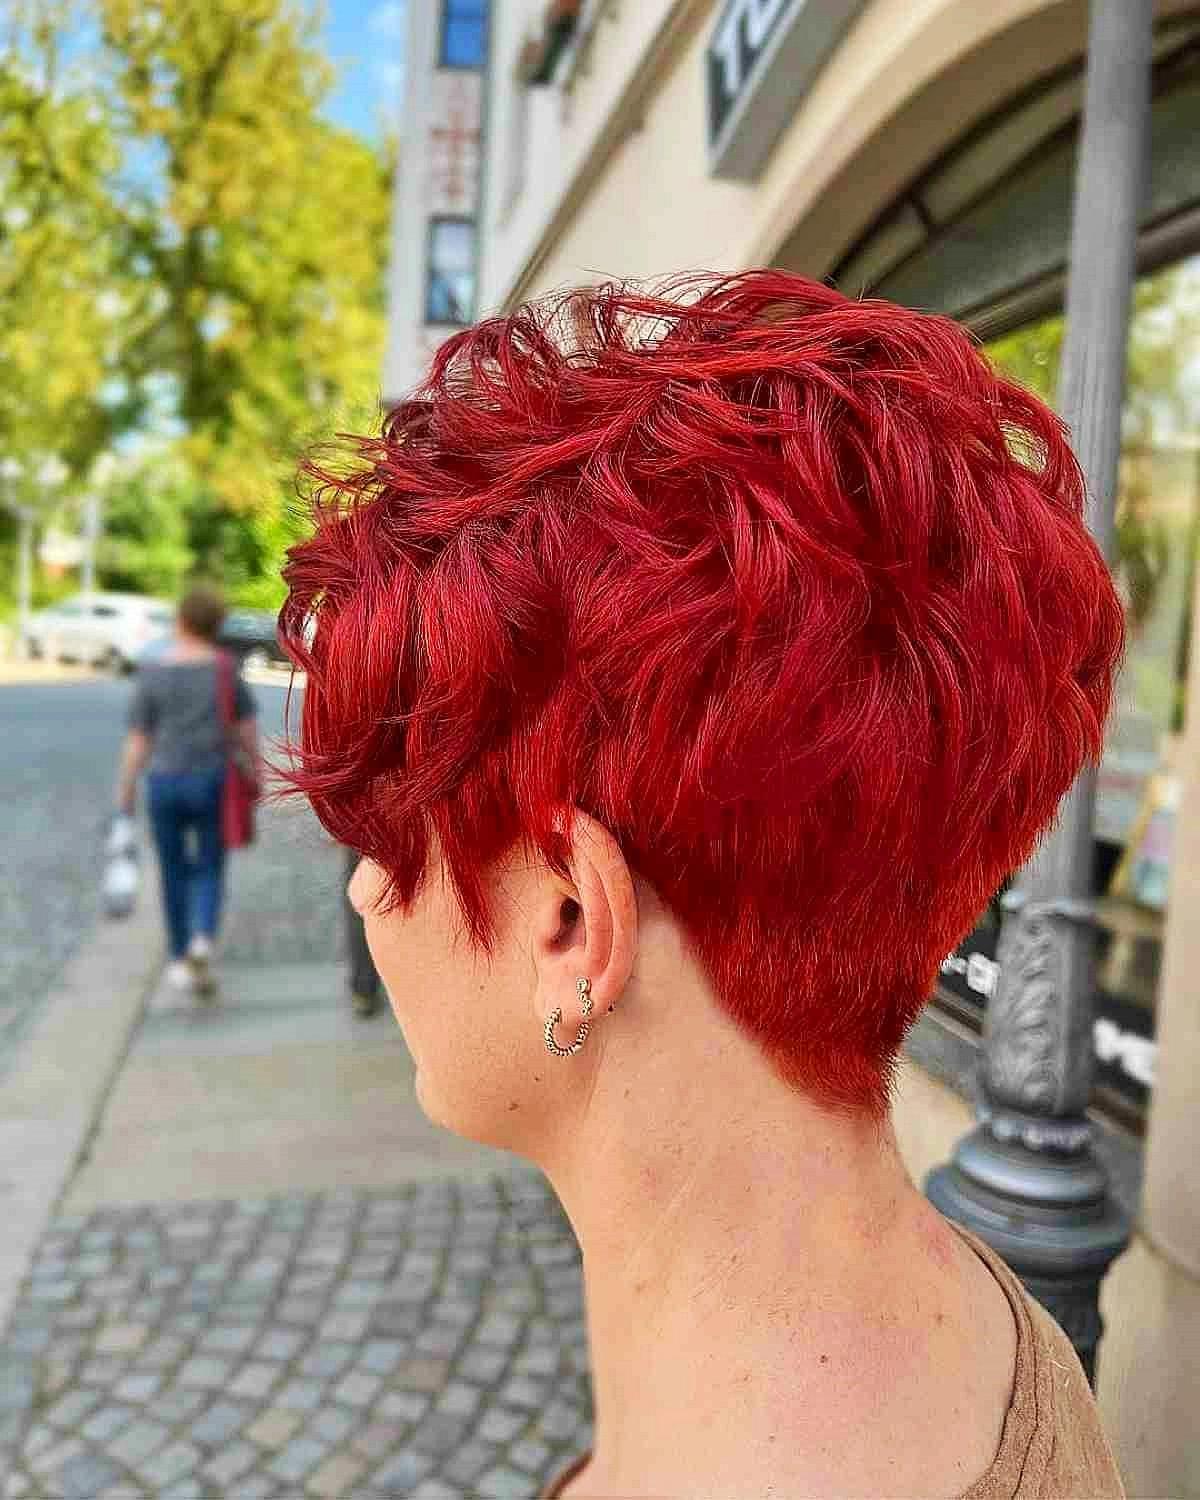 kurze haare frau rote haare pixie cut foto ruecken top haar by rosi